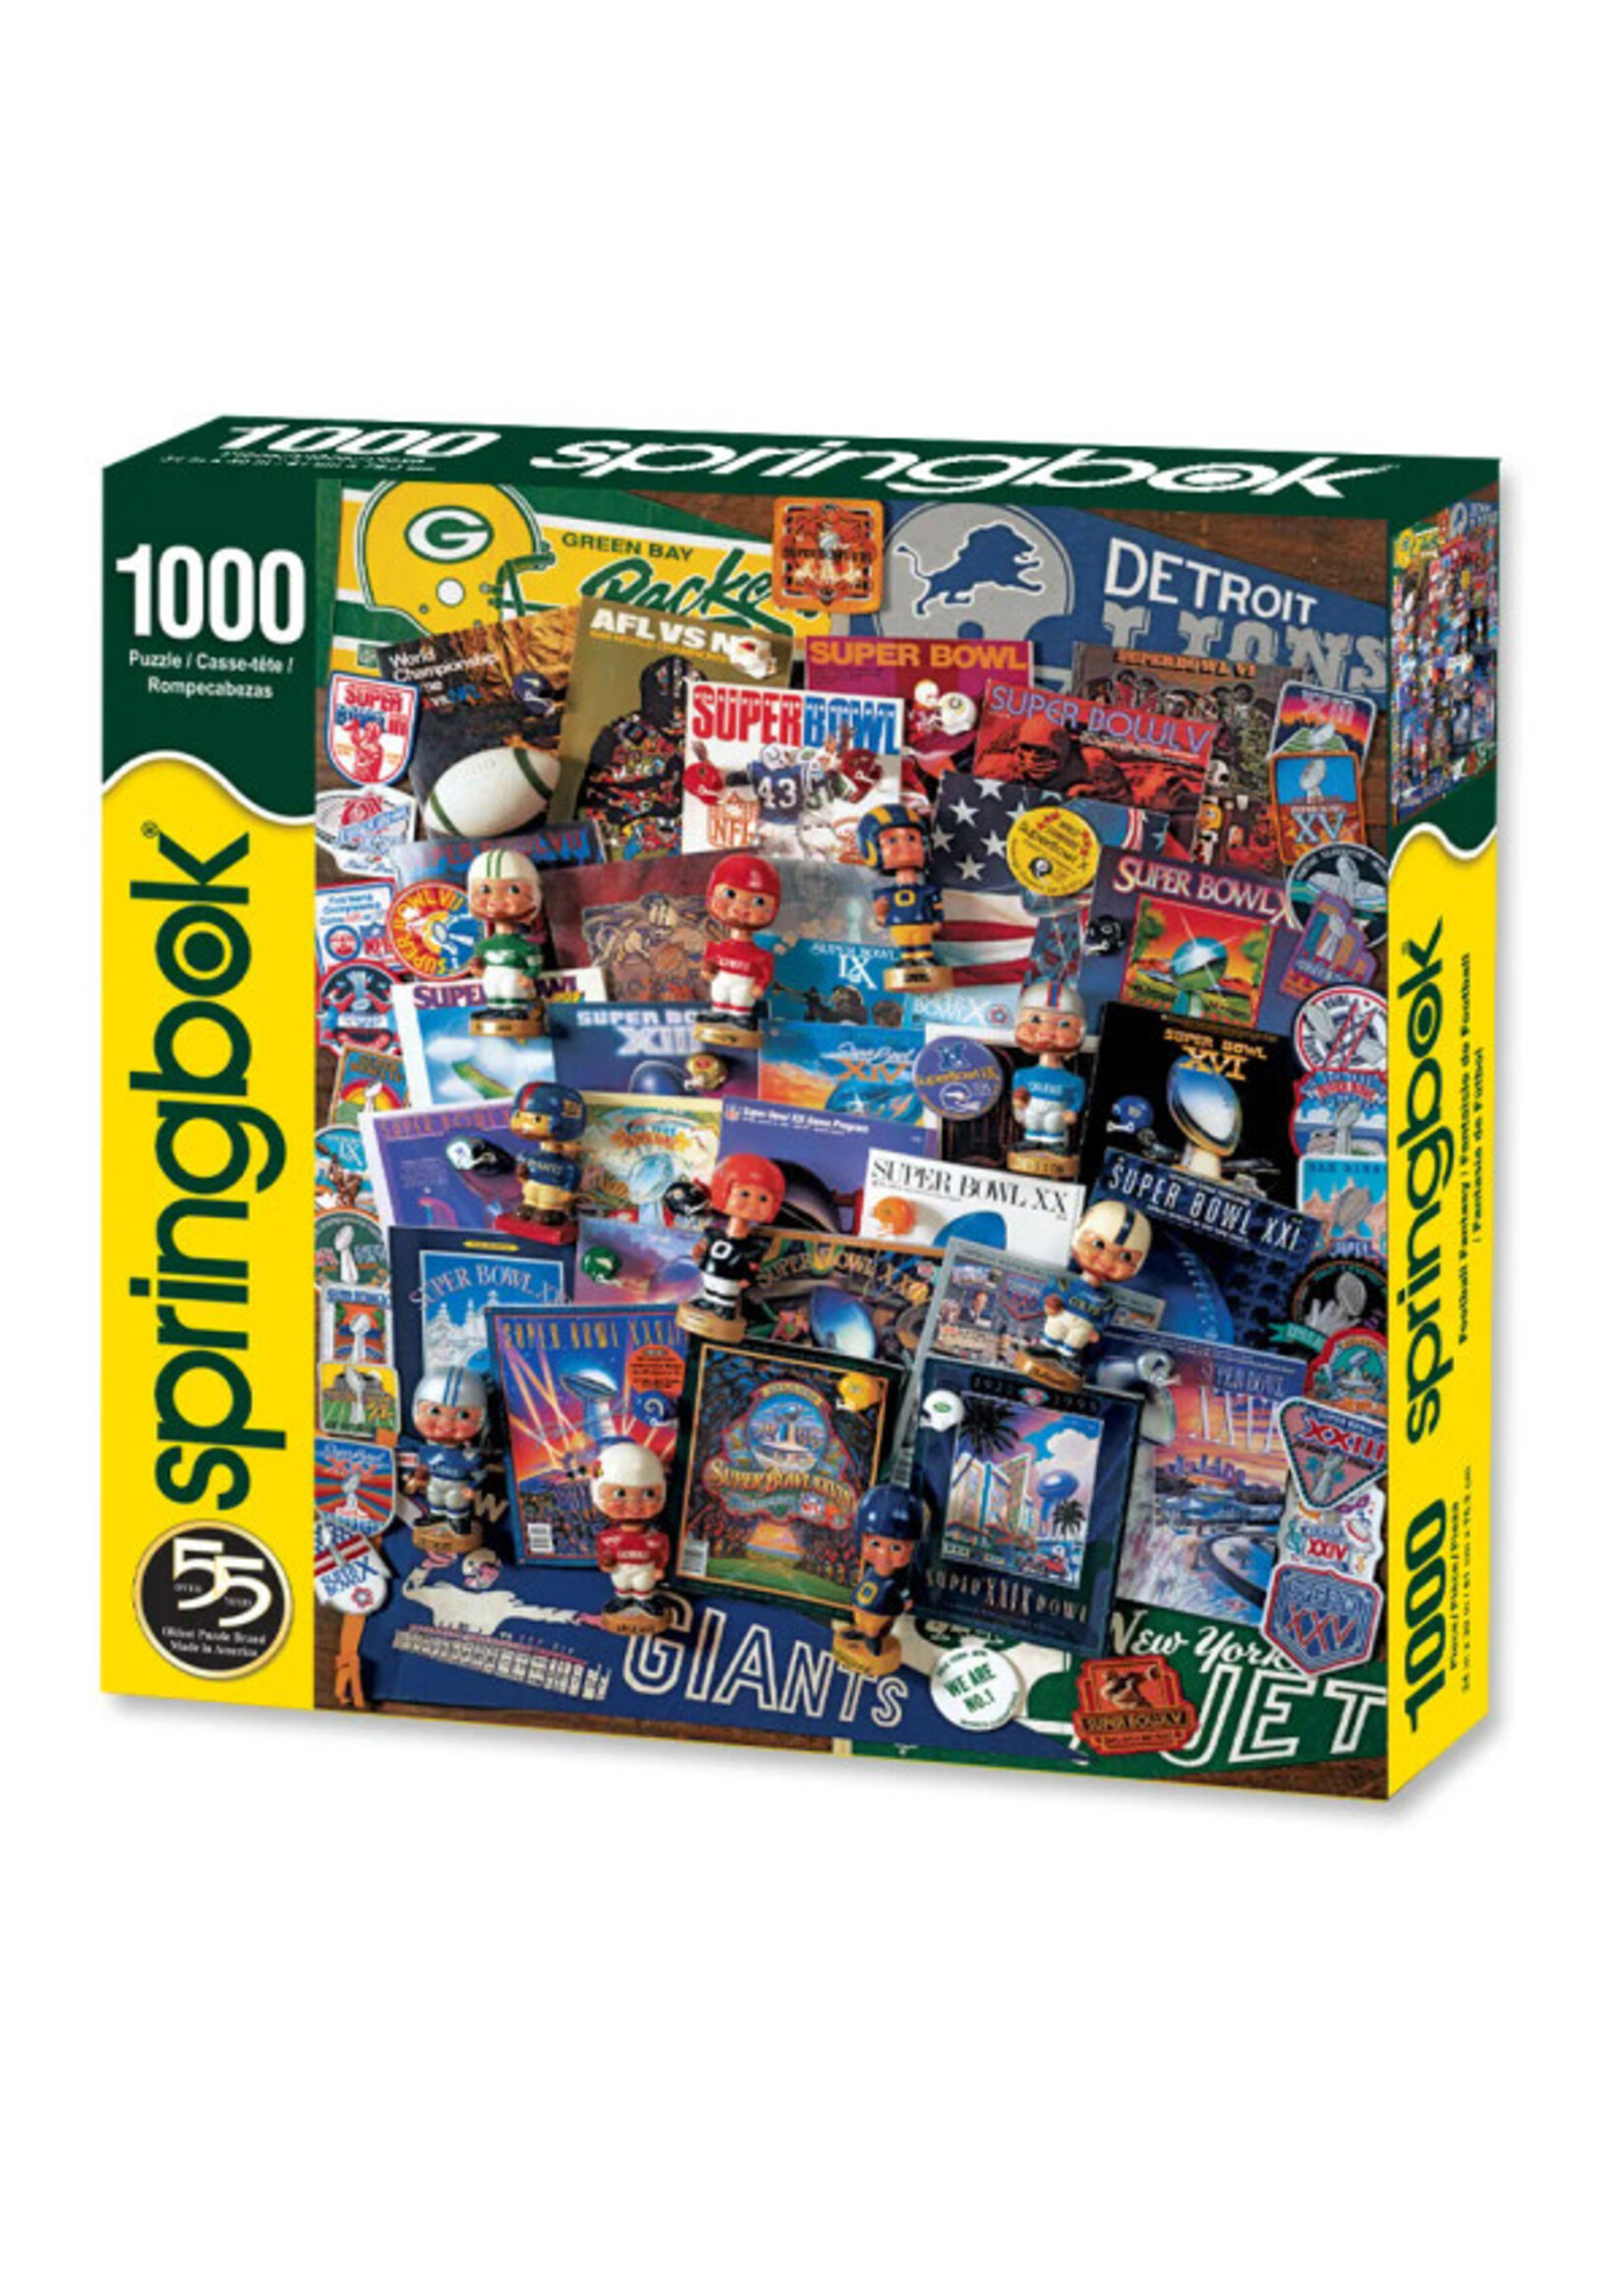 Springbok Puzzle Puzzle: Football Fantasy 1000 Piece Jigsaw Puzzle